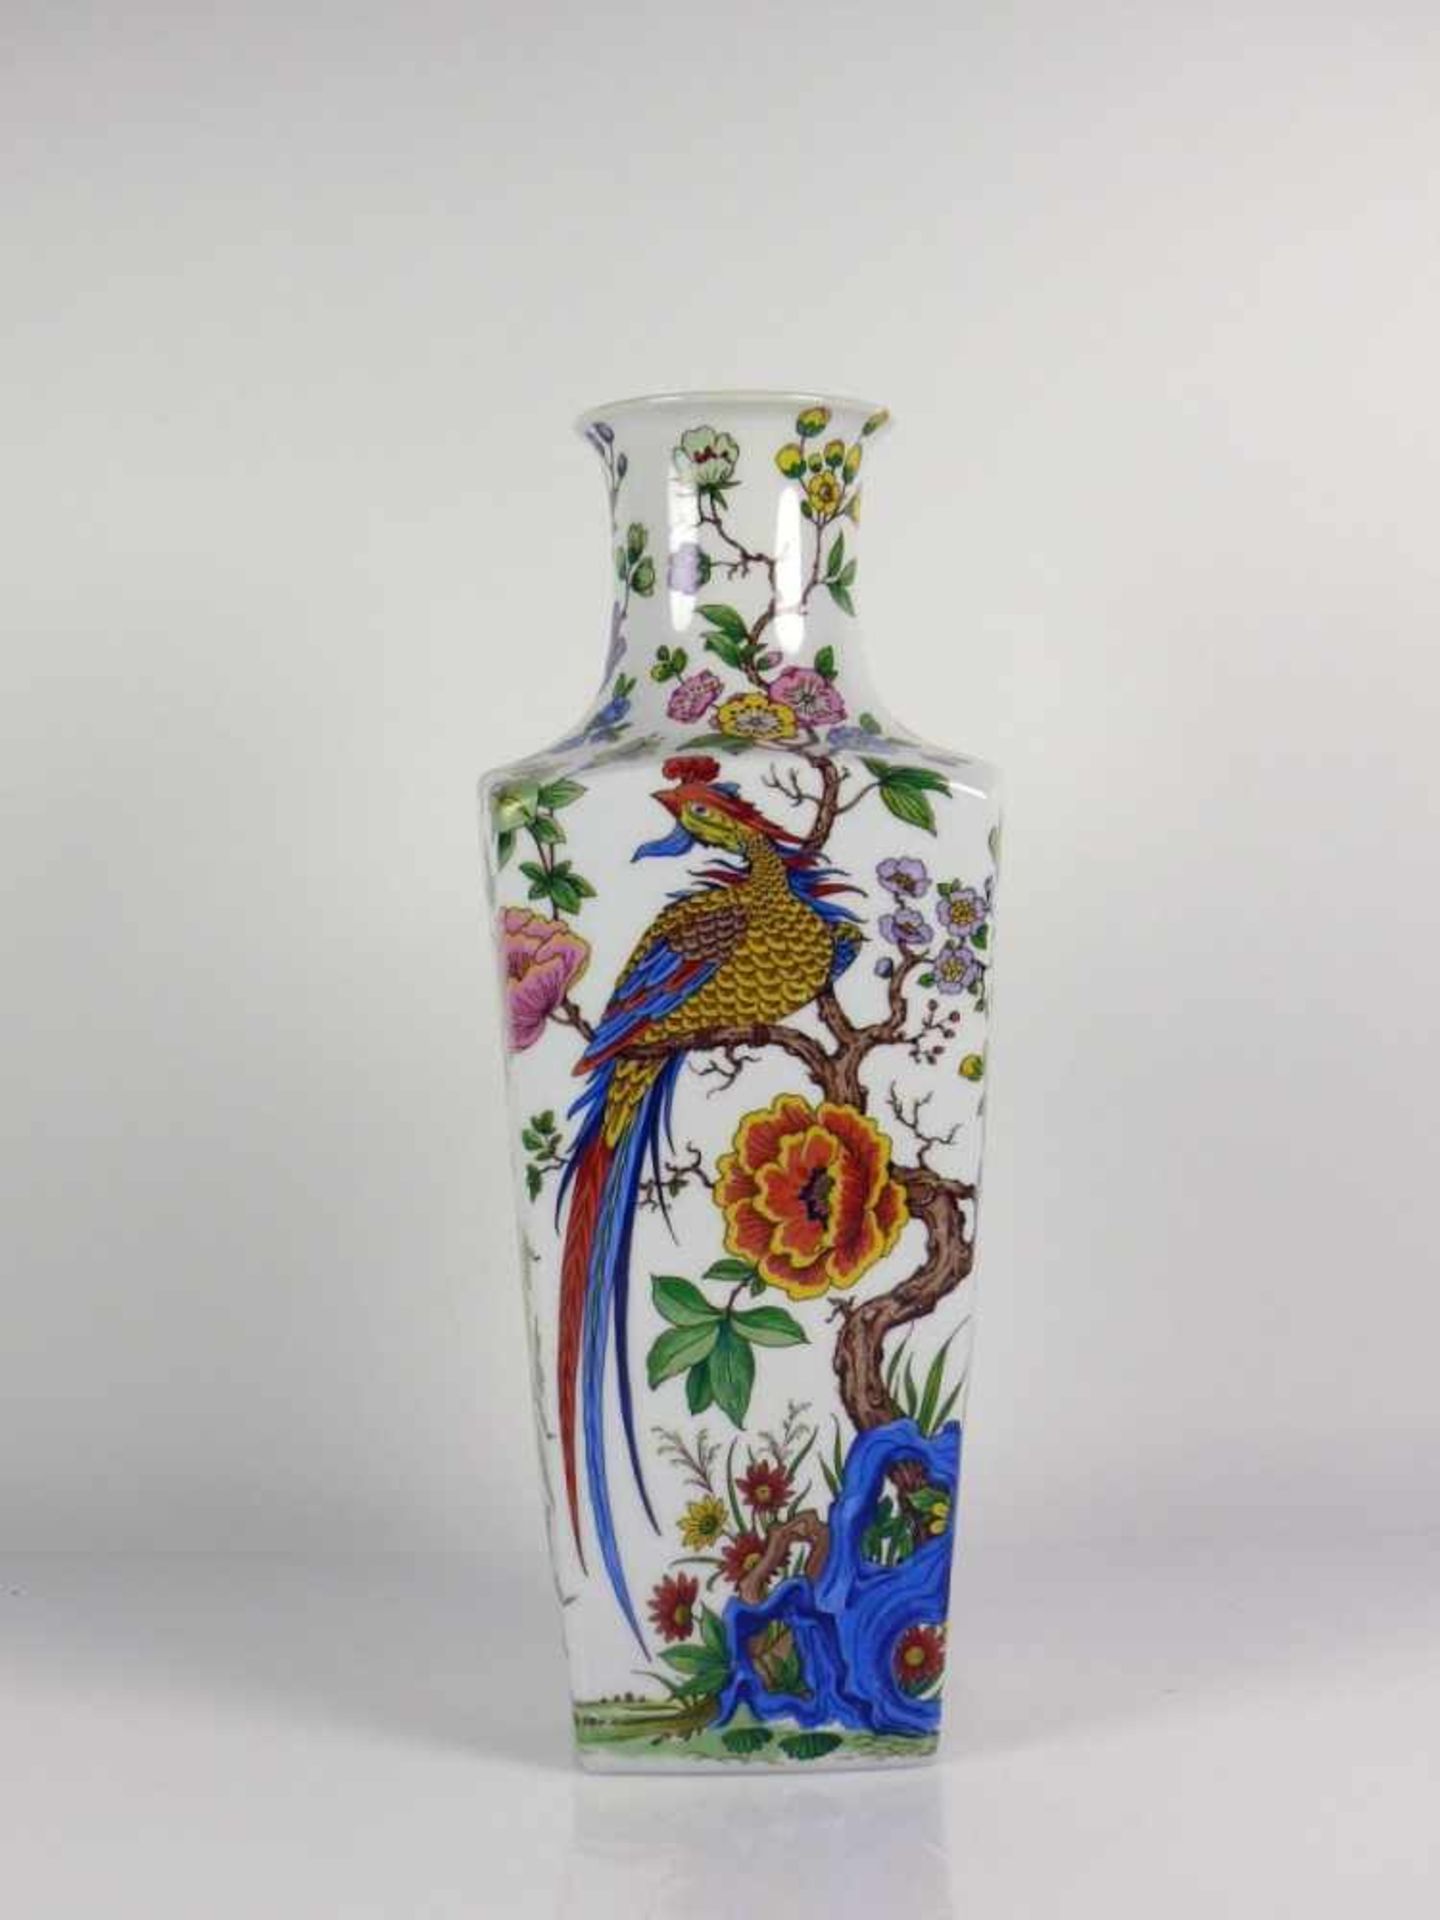 Vase (20. Jh.) viereckiger Korpus mit eingezogenem Hals; umlaufender polychrom floral bemalter - Bild 2 aus 3